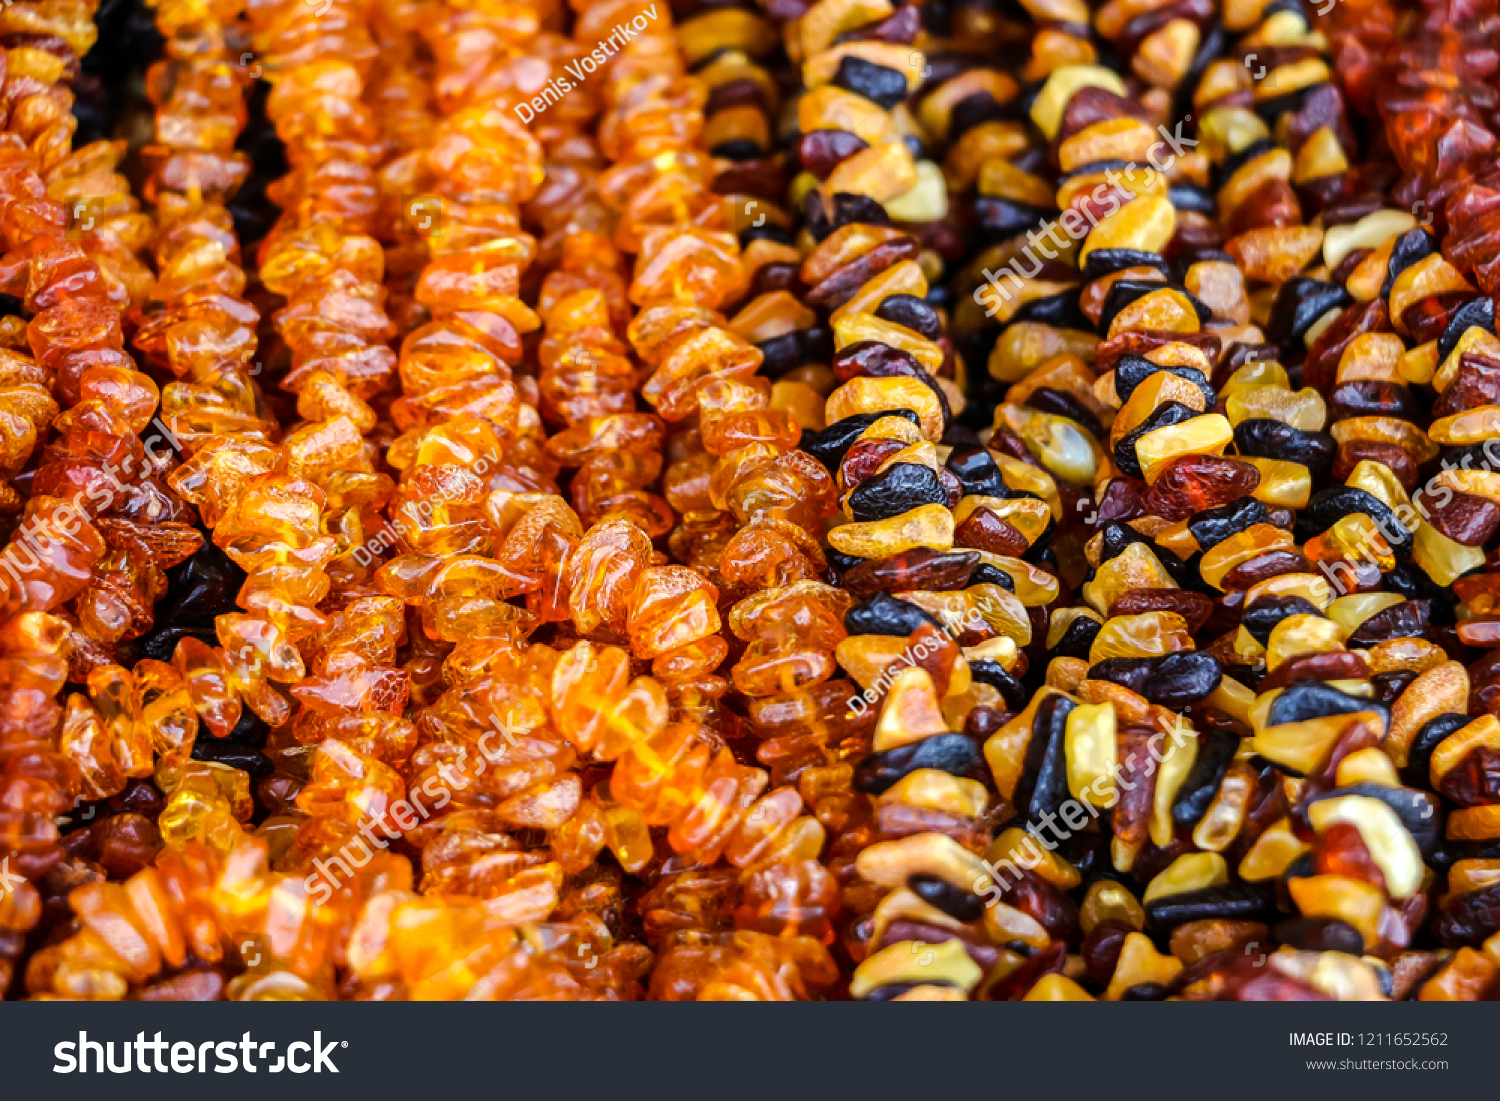 Image result for amber street market